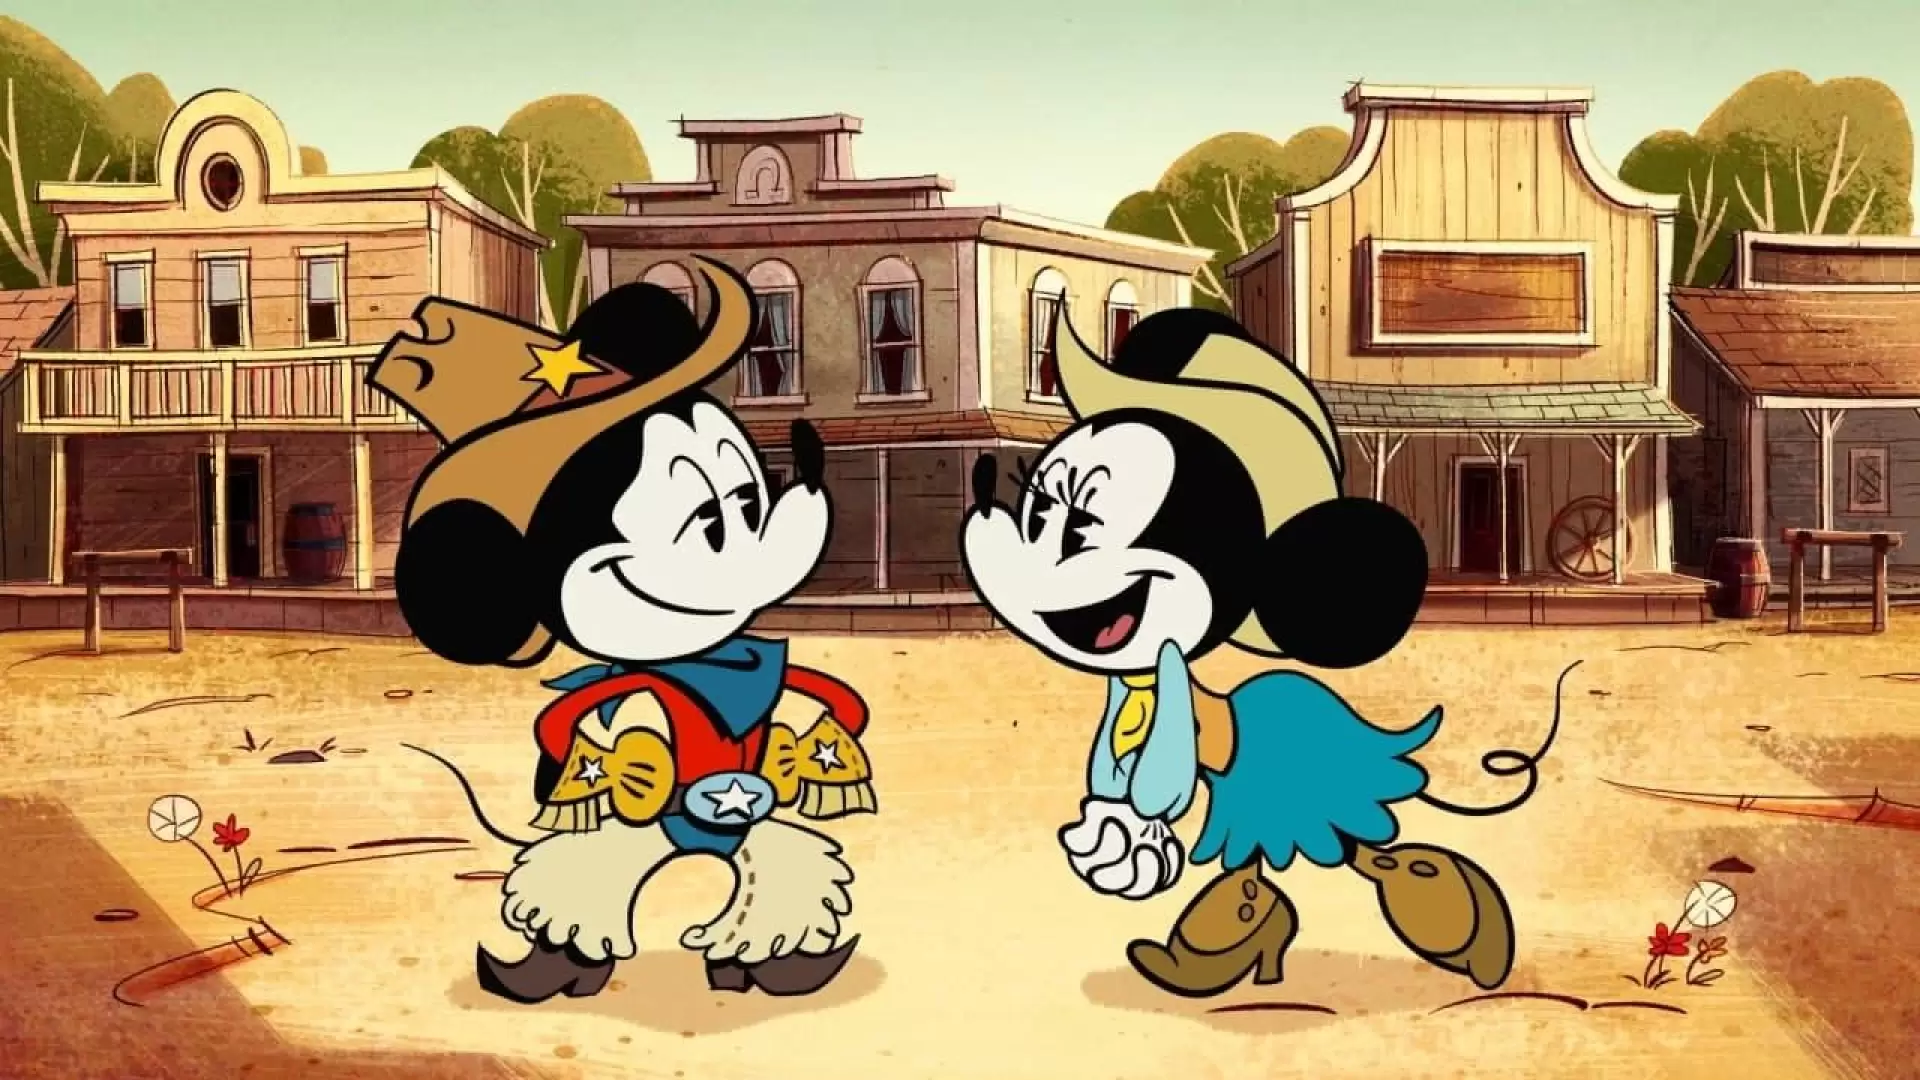 دانلود انیمیشن The Wonderful World of Mickey Mouse 2020 (دنیای شگفت انگیز میکی مووس)